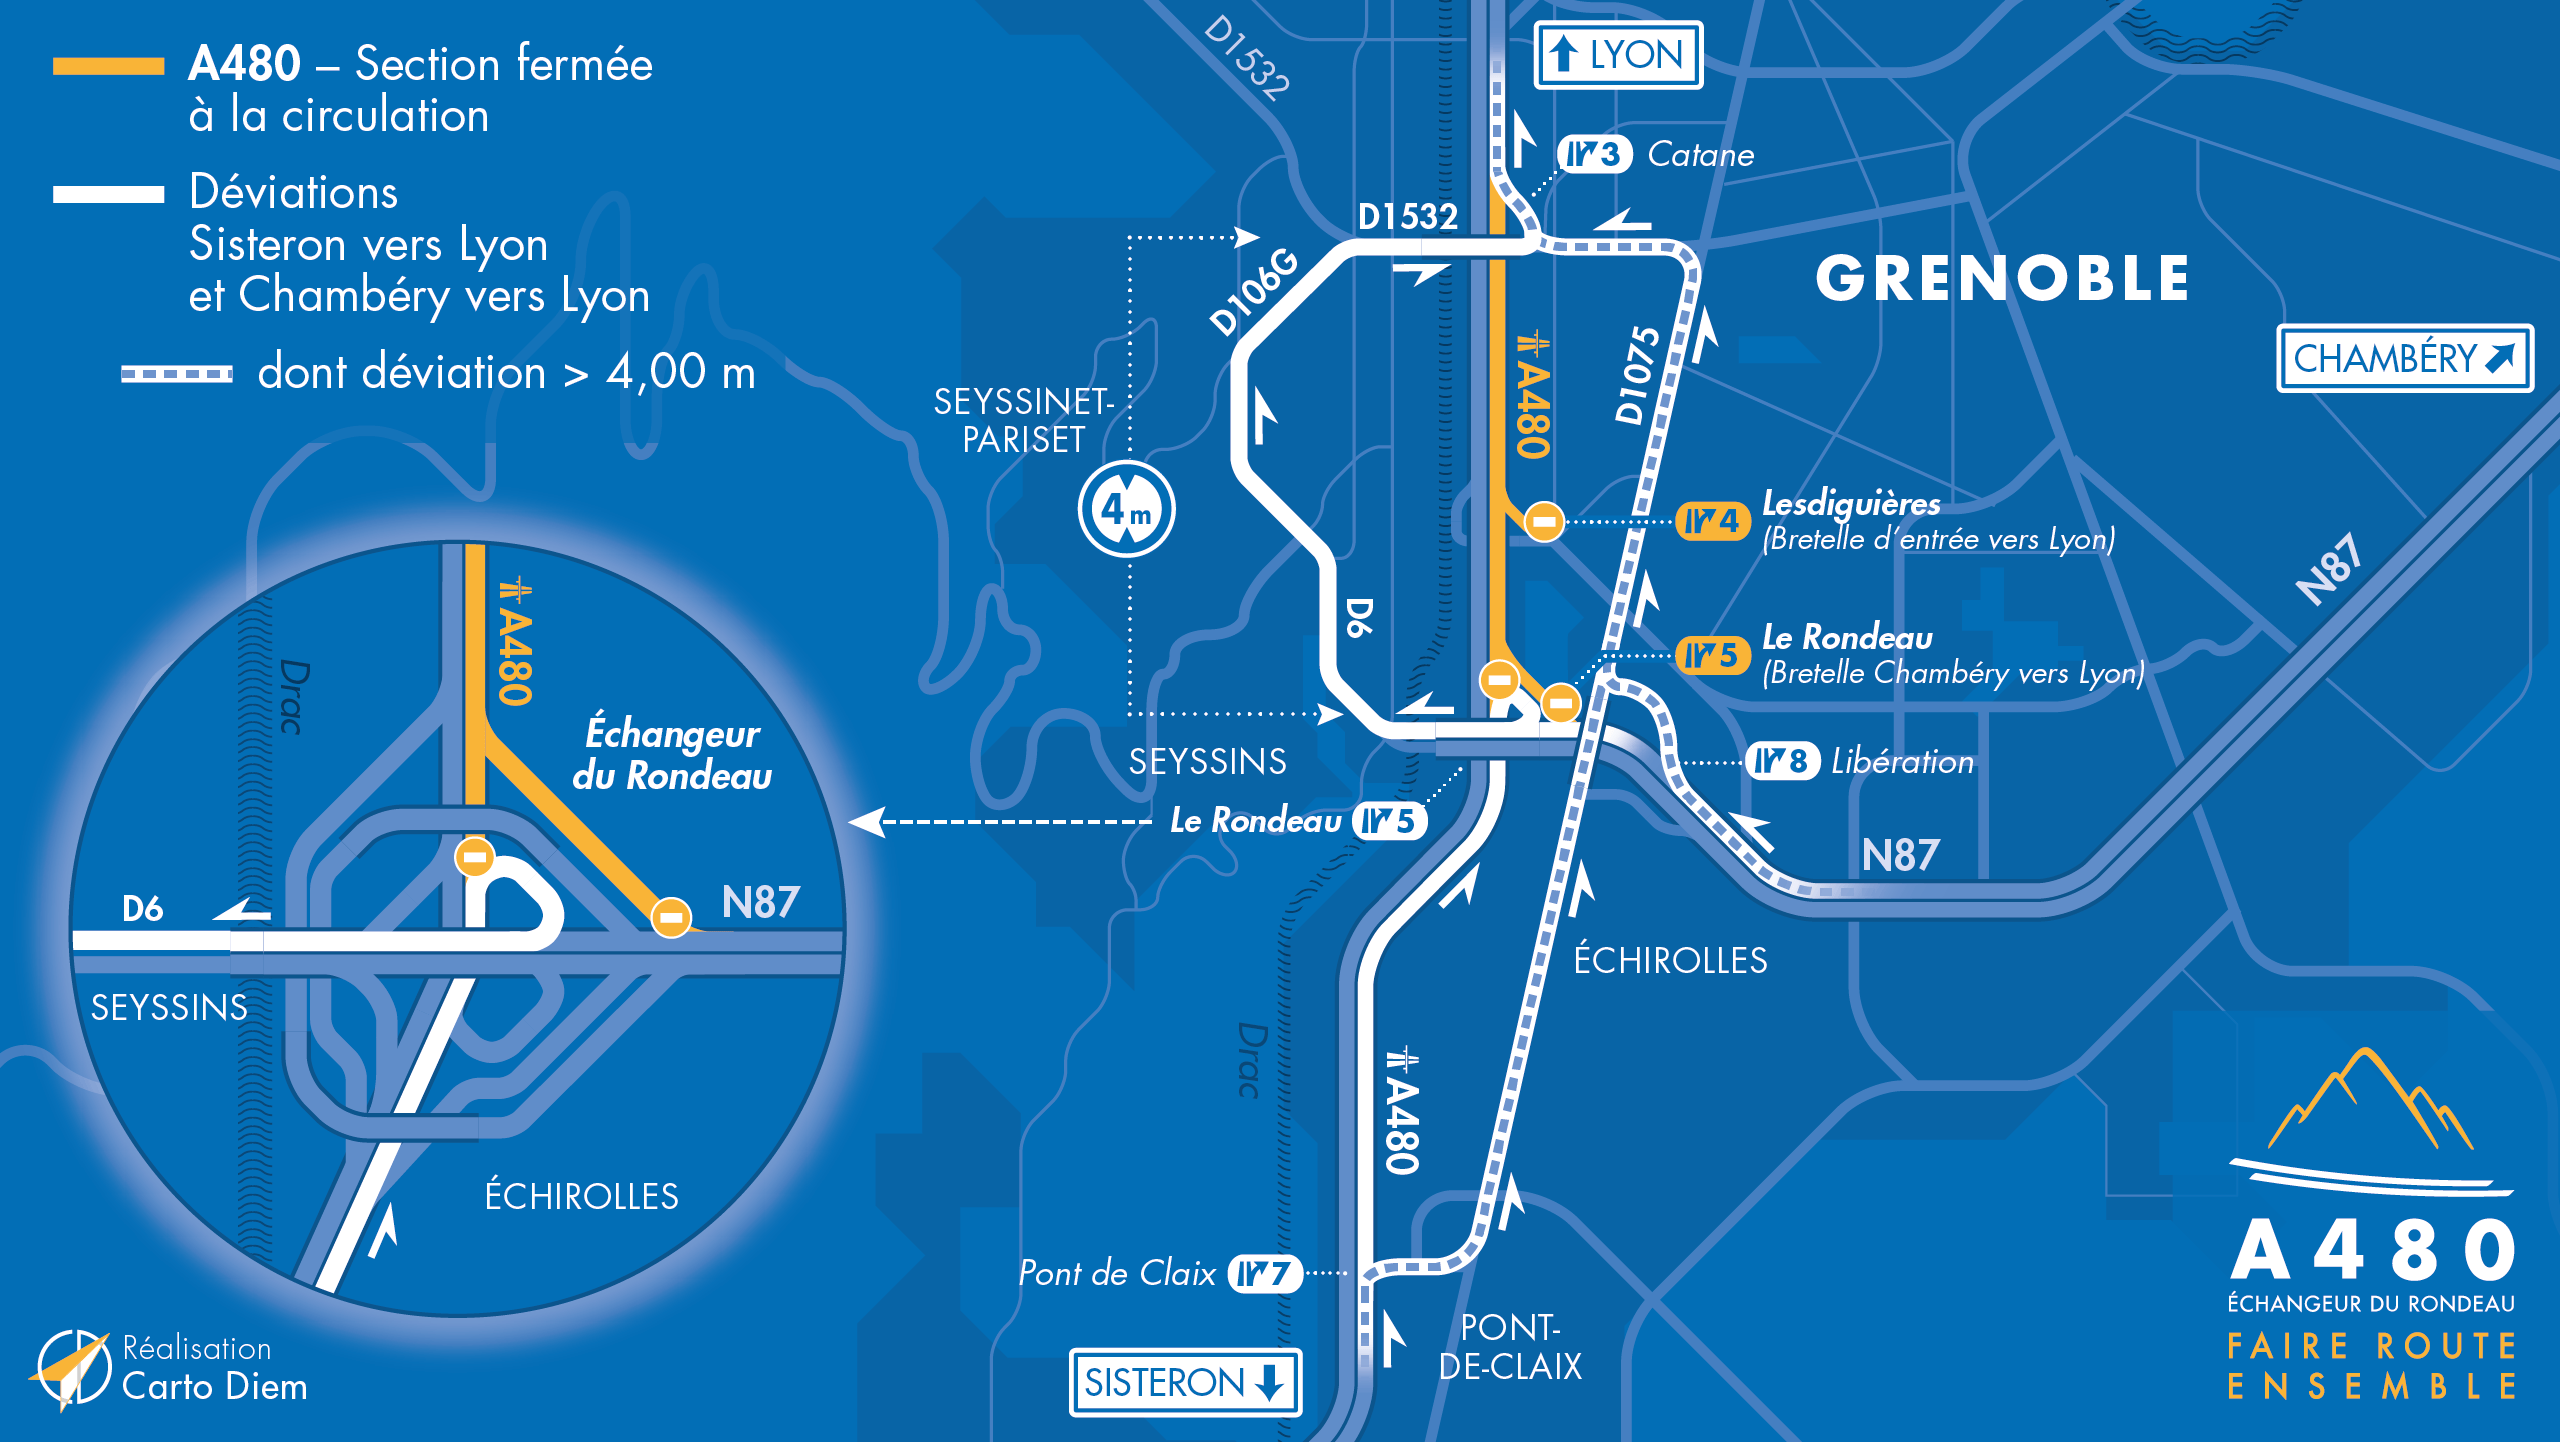 Carte de déviation suite à la fermeture de l'autoroute A480 en direction de Lyon entre le Rondeau et Catane